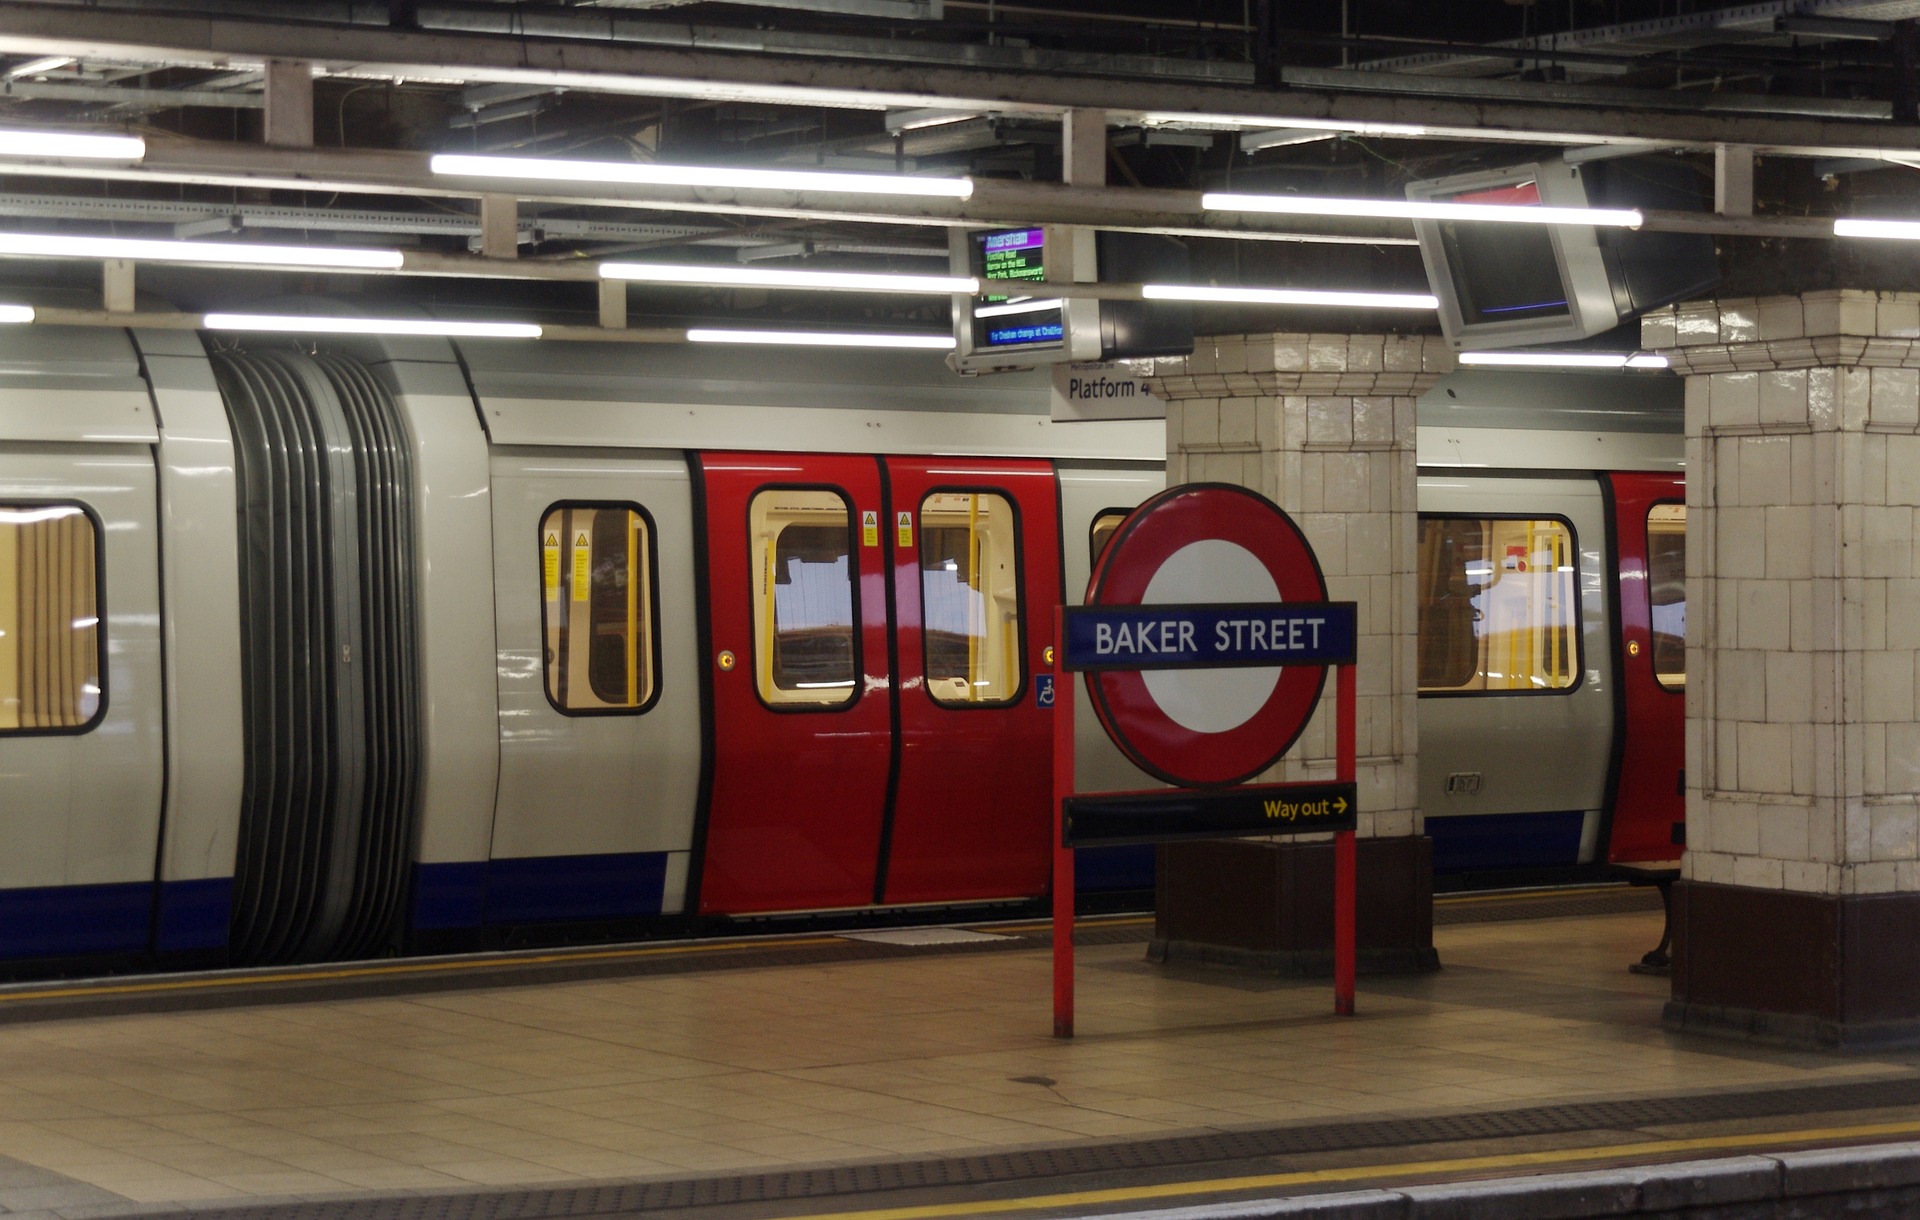 Baker Street tube